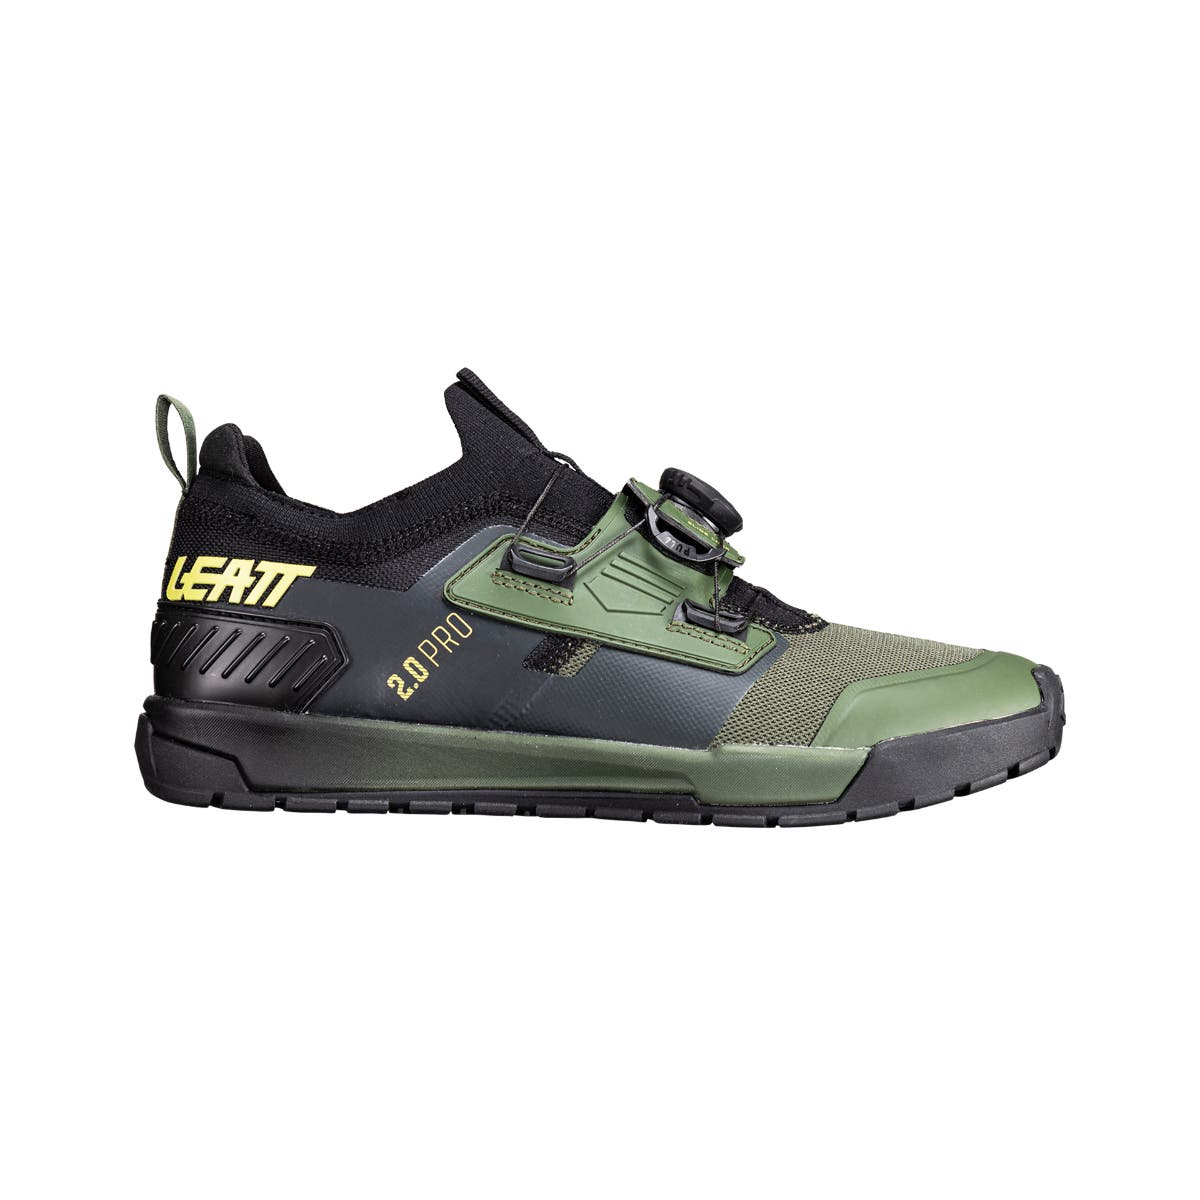 Leatt - 2.0 ProFlat Shoes